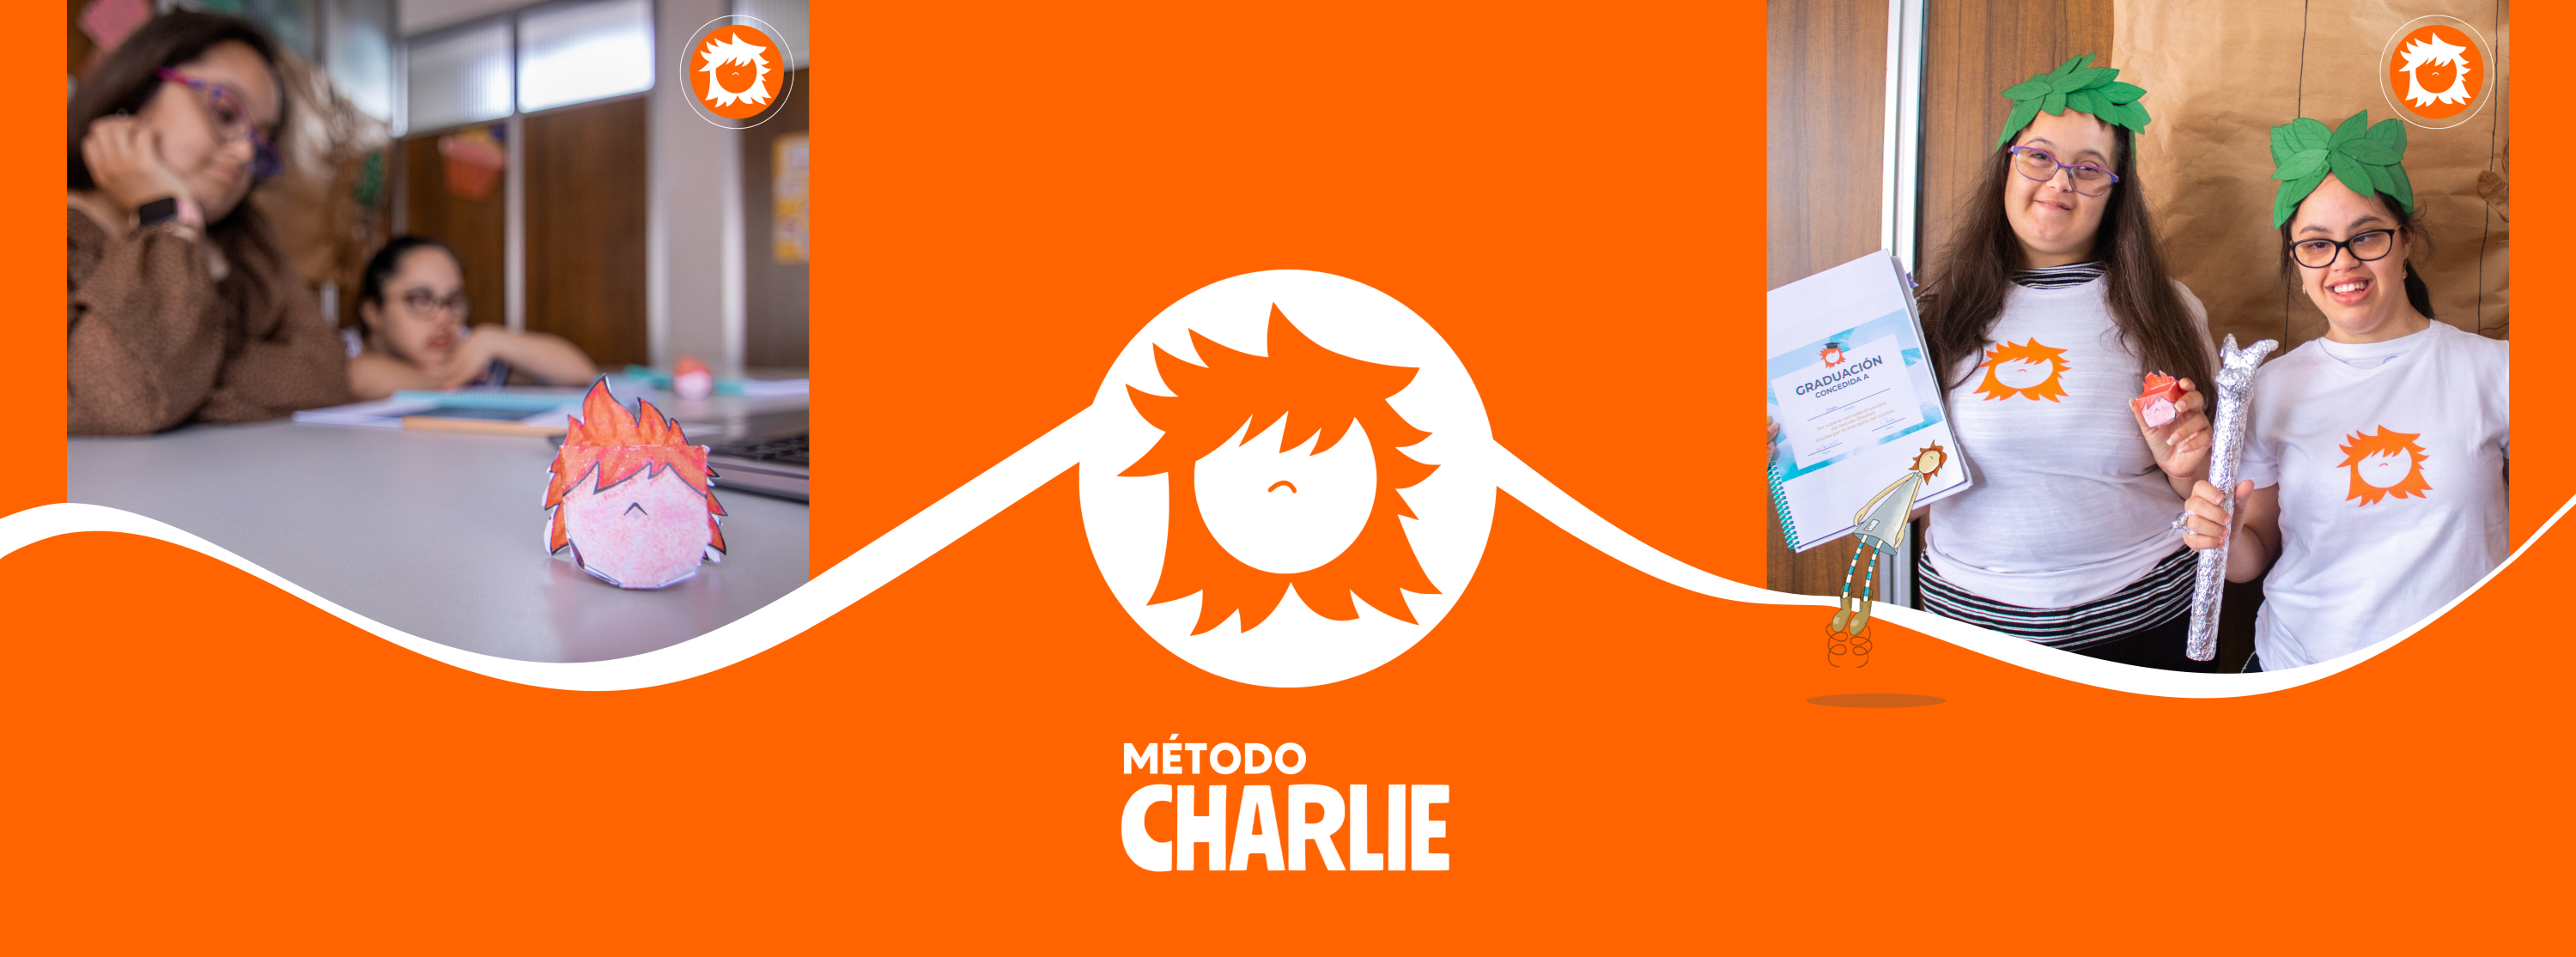 Metodo Charlie